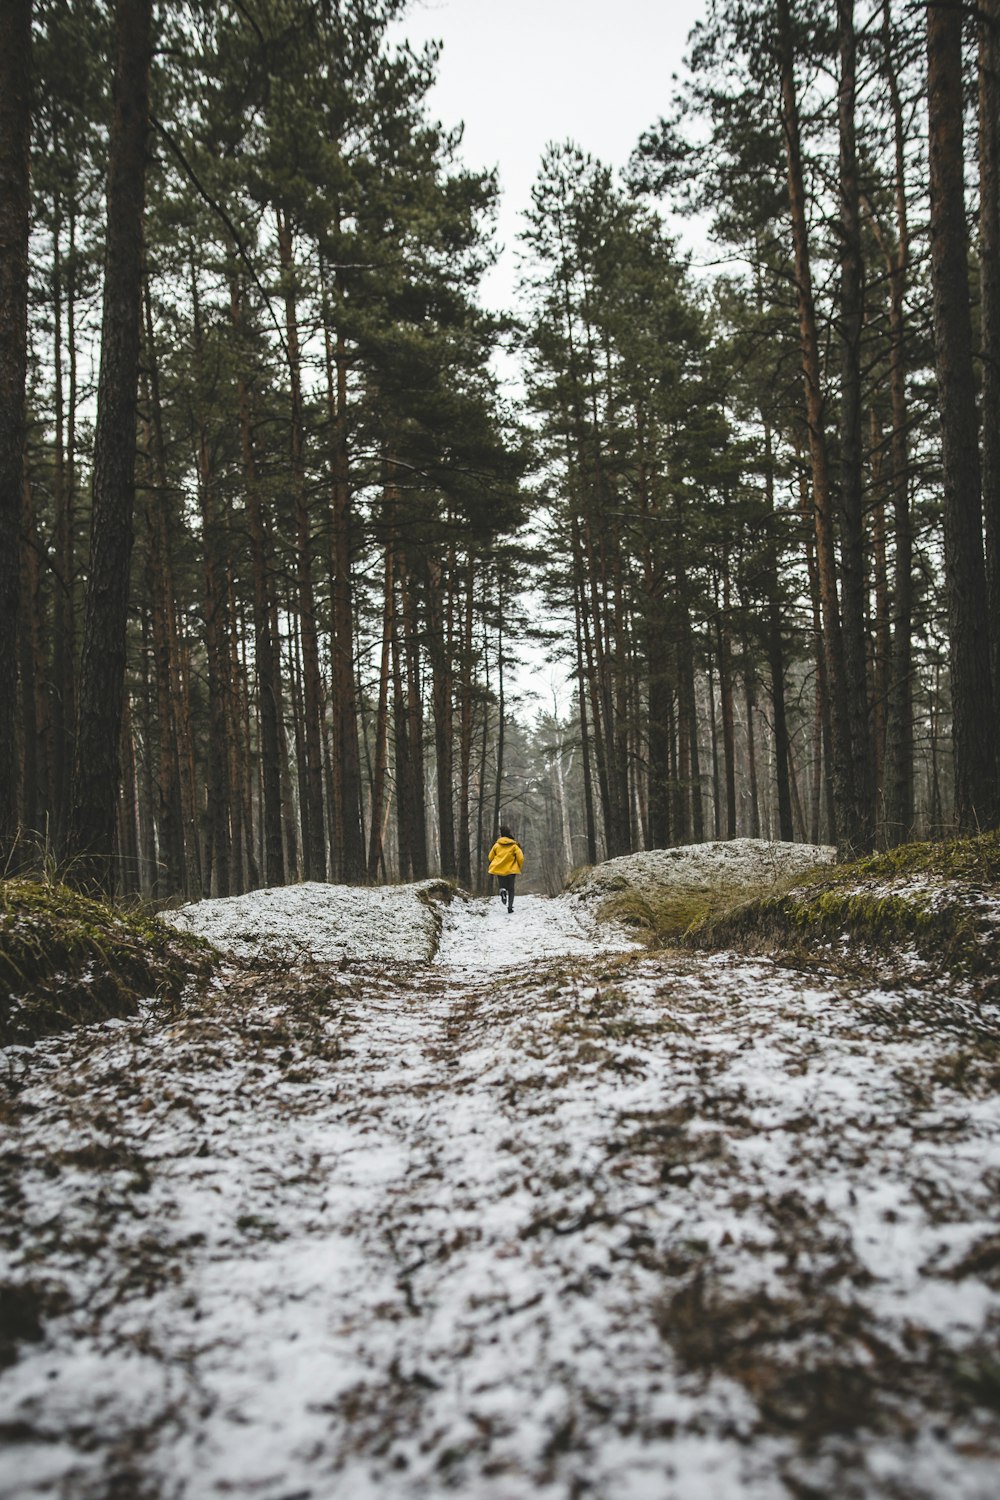 Persona en chaqueta amarilla corriendo en el bosque